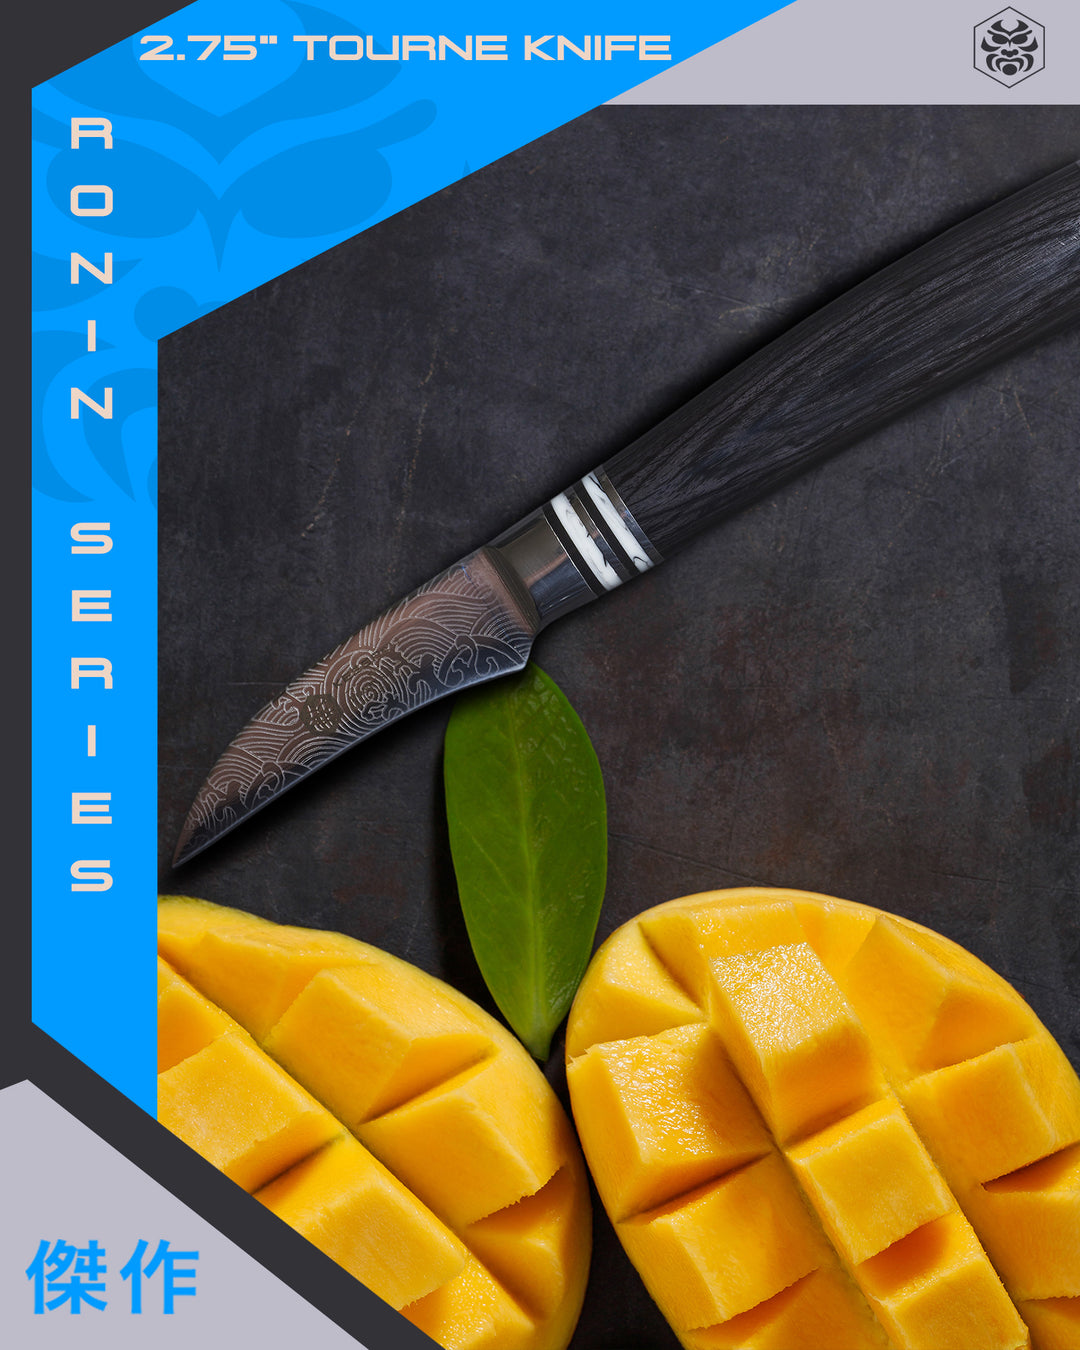 Mangoes cut decoratively using Ronin Tourne Knife